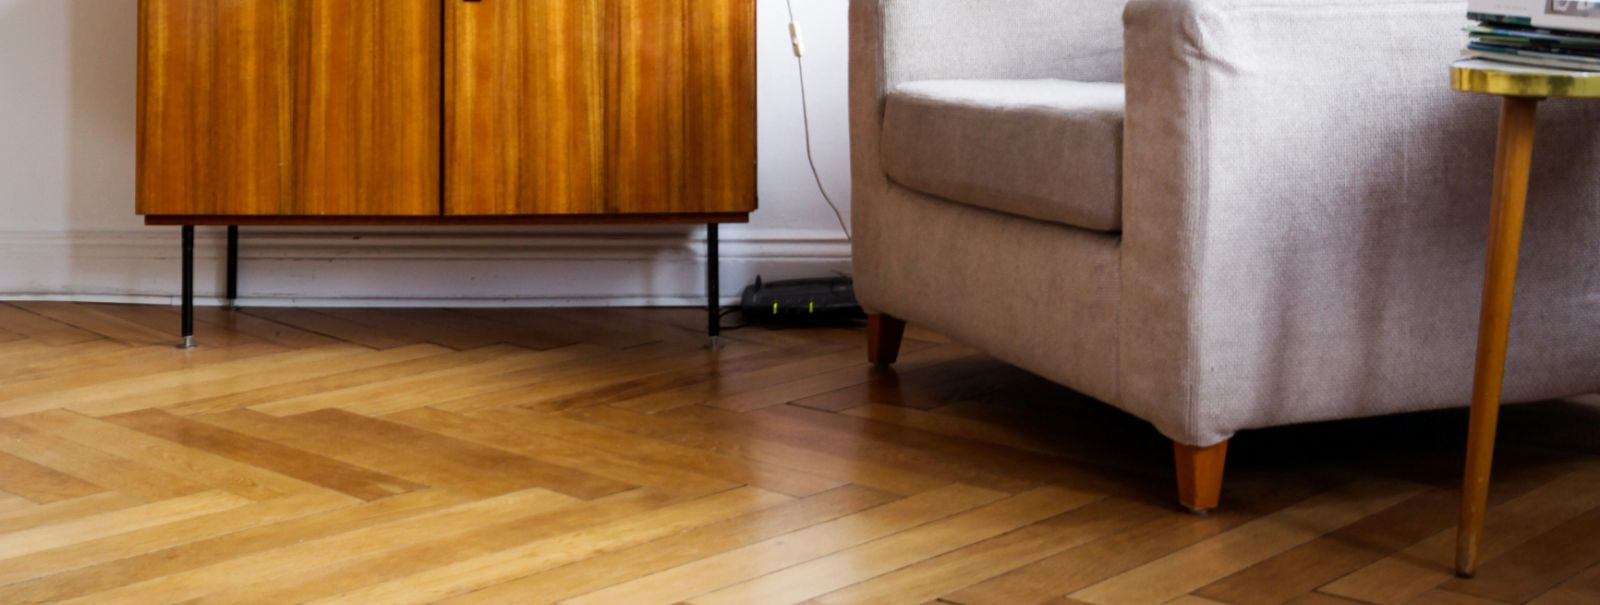 Kui soovite oma põrandakatete eluiga pikendada ja tagada nende välimuse säilimine aastateks, siis tuleb kaaluda põranda katete vahatamist. Vahatamine võib tundu